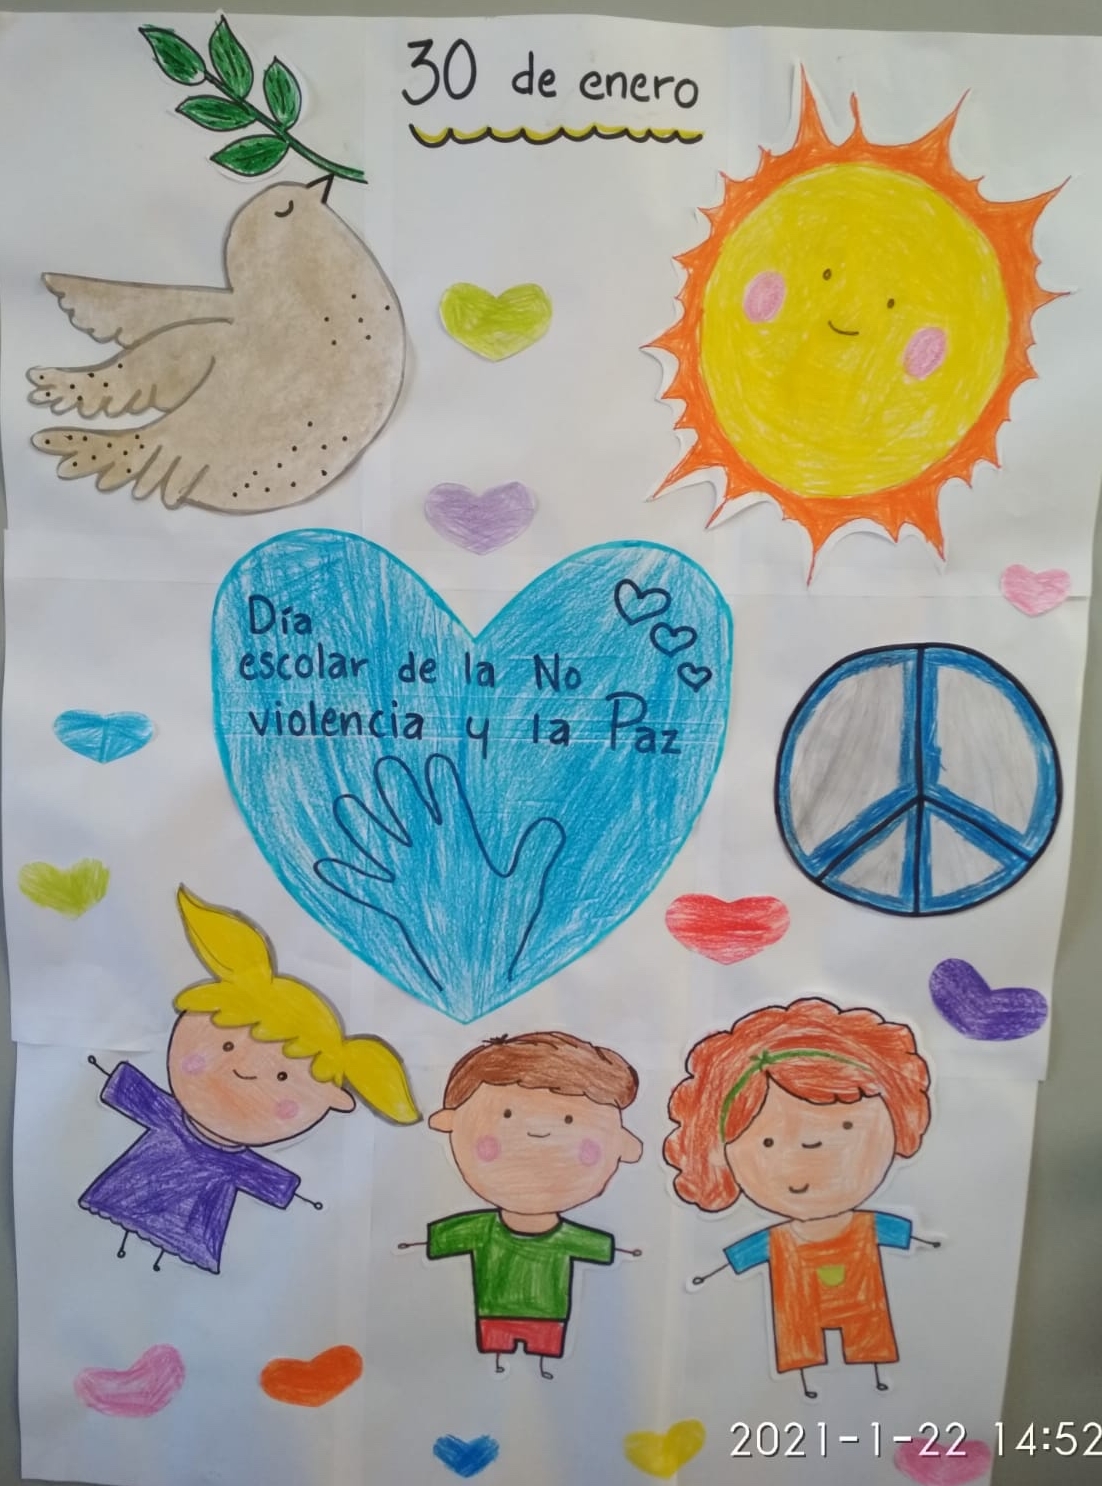 30 de enero - Día Escolar de la No Violencia y La Paz ☮️🕊 - Sercole